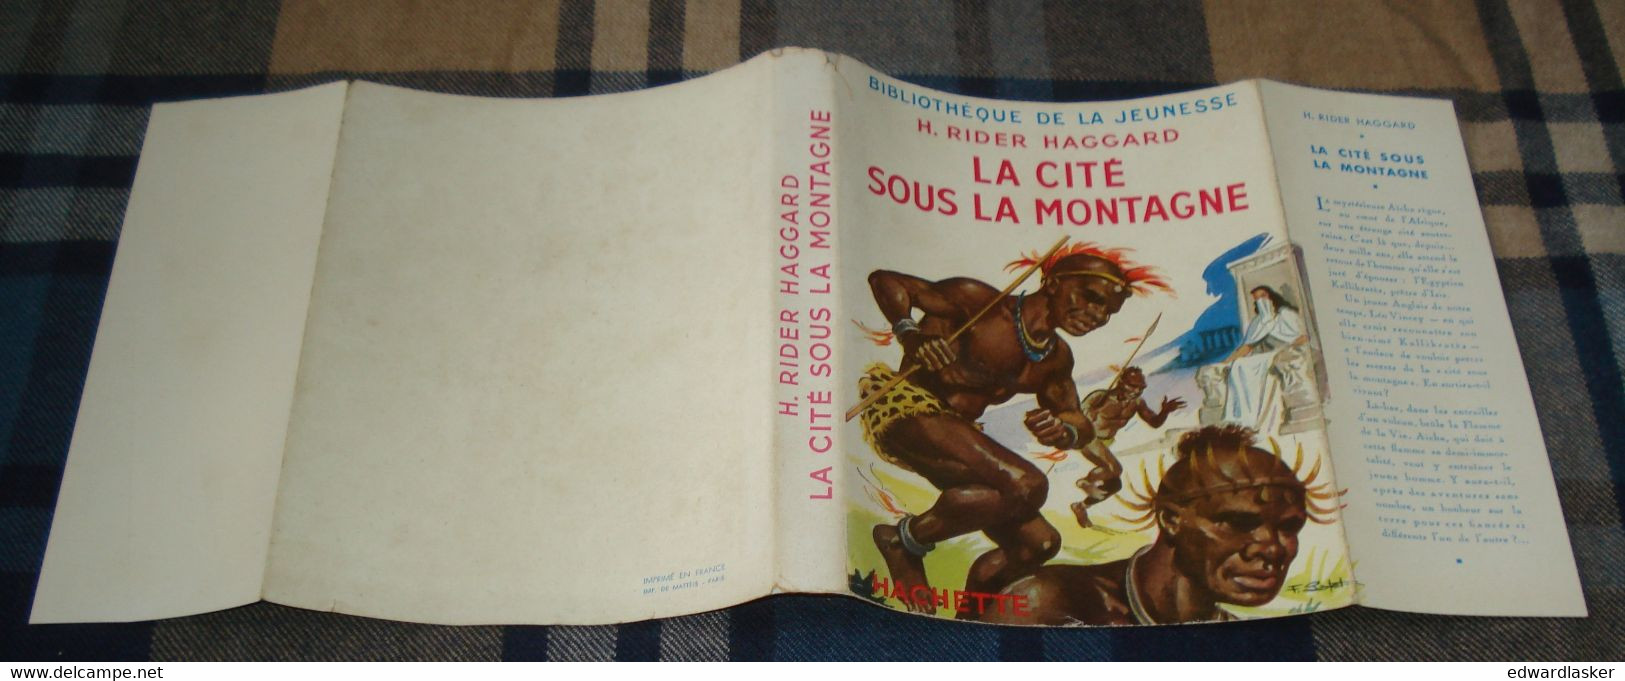 BIBLIOTHEQUE de la JEUNESSE : La Cité sous la Montagne (She) /H. Rider Haggard - Jaquette 1952